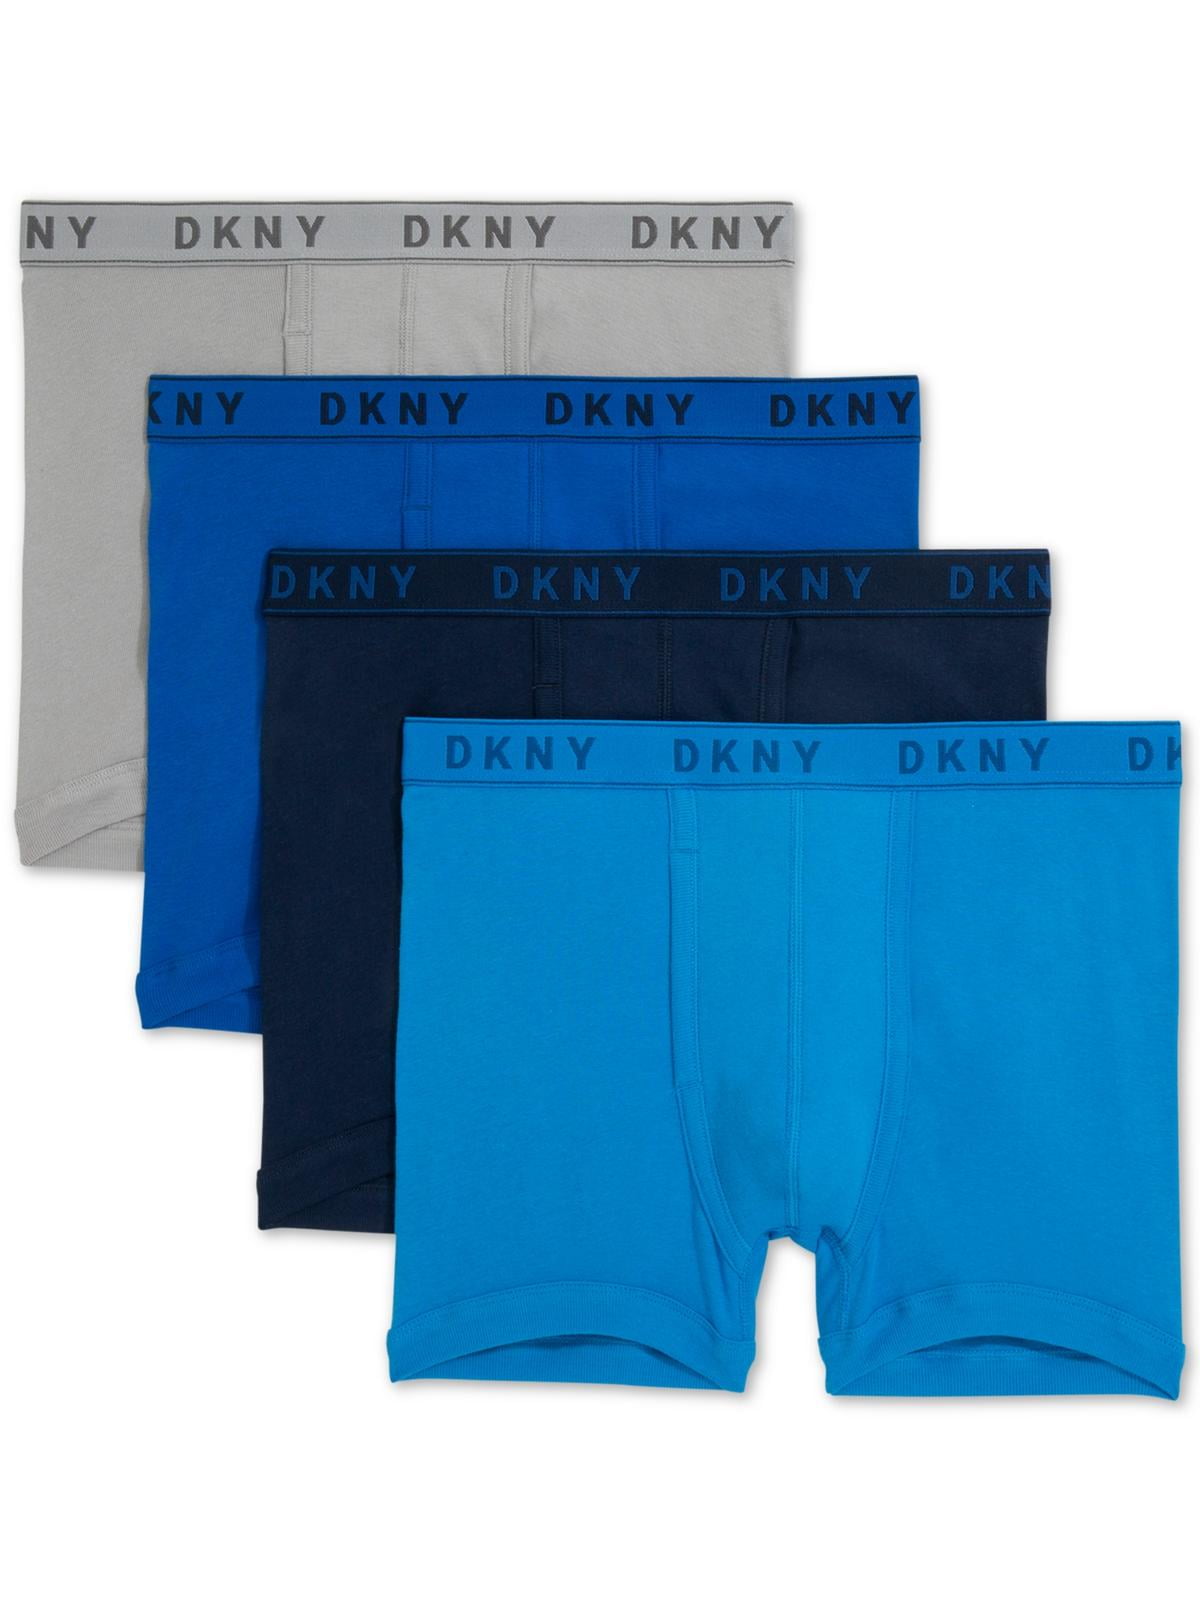 DKNY Mens 4 Pack Underwear Boxer Briefs